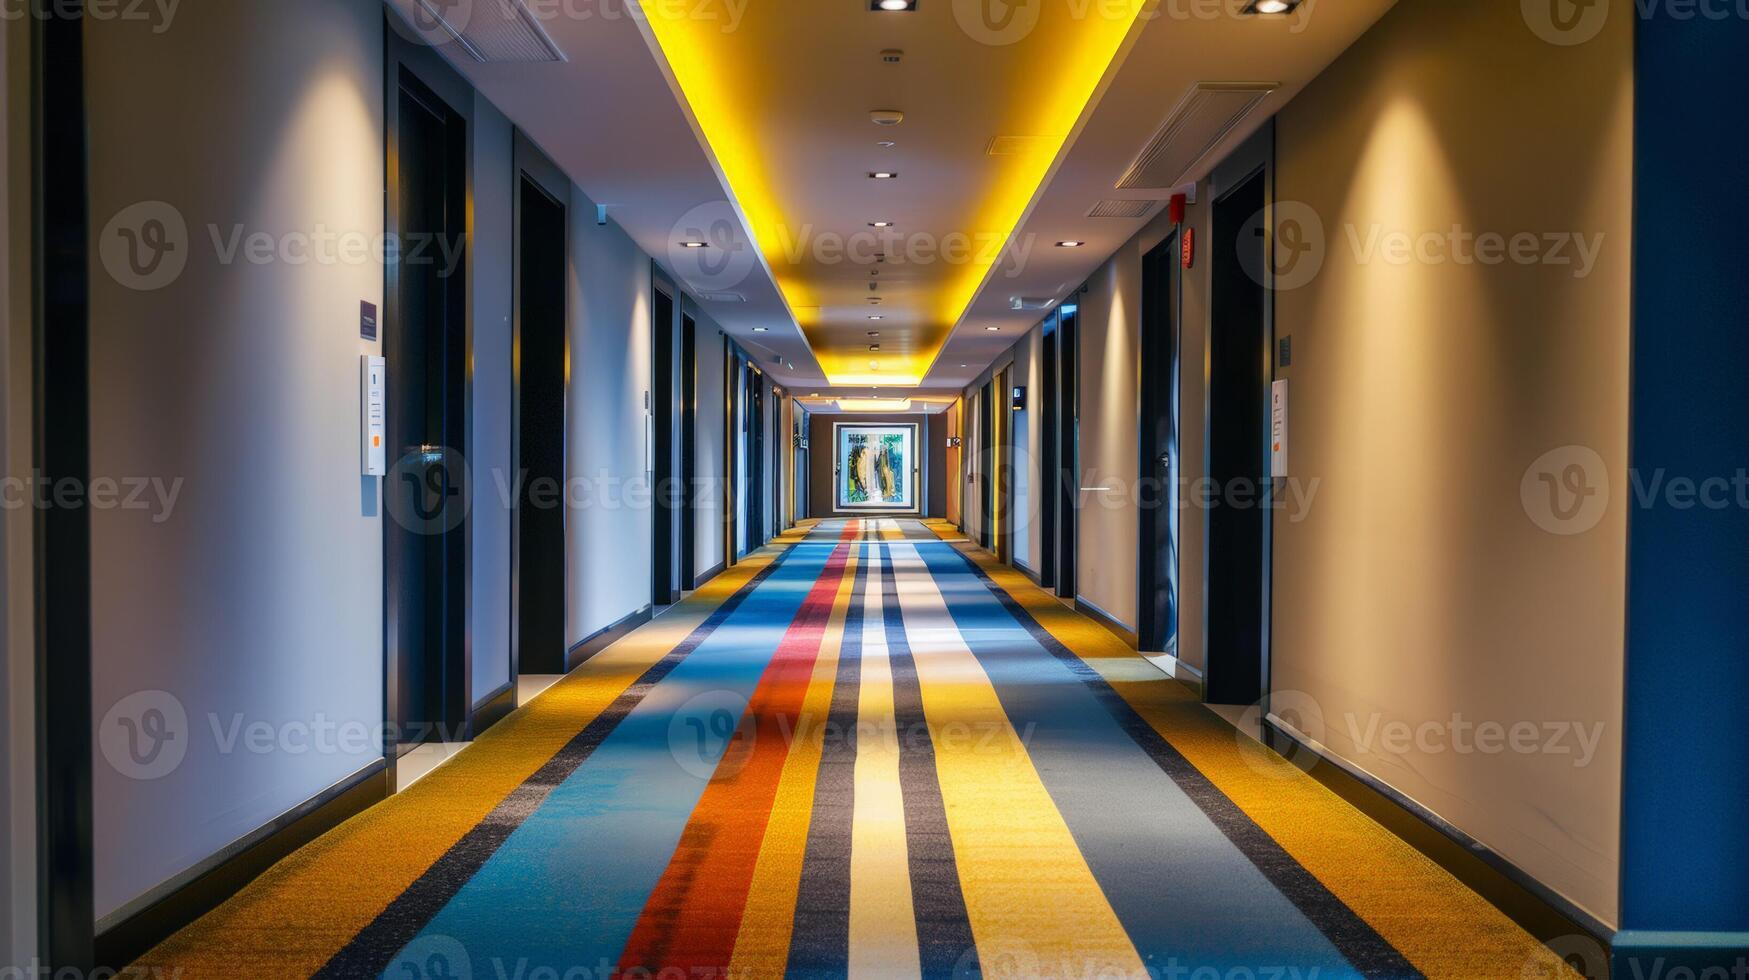 modern hotell korridor med vibrerande randig matta och upplyst tak, lämplig för begrepp sådan som resa, boende, och arkitektur foto